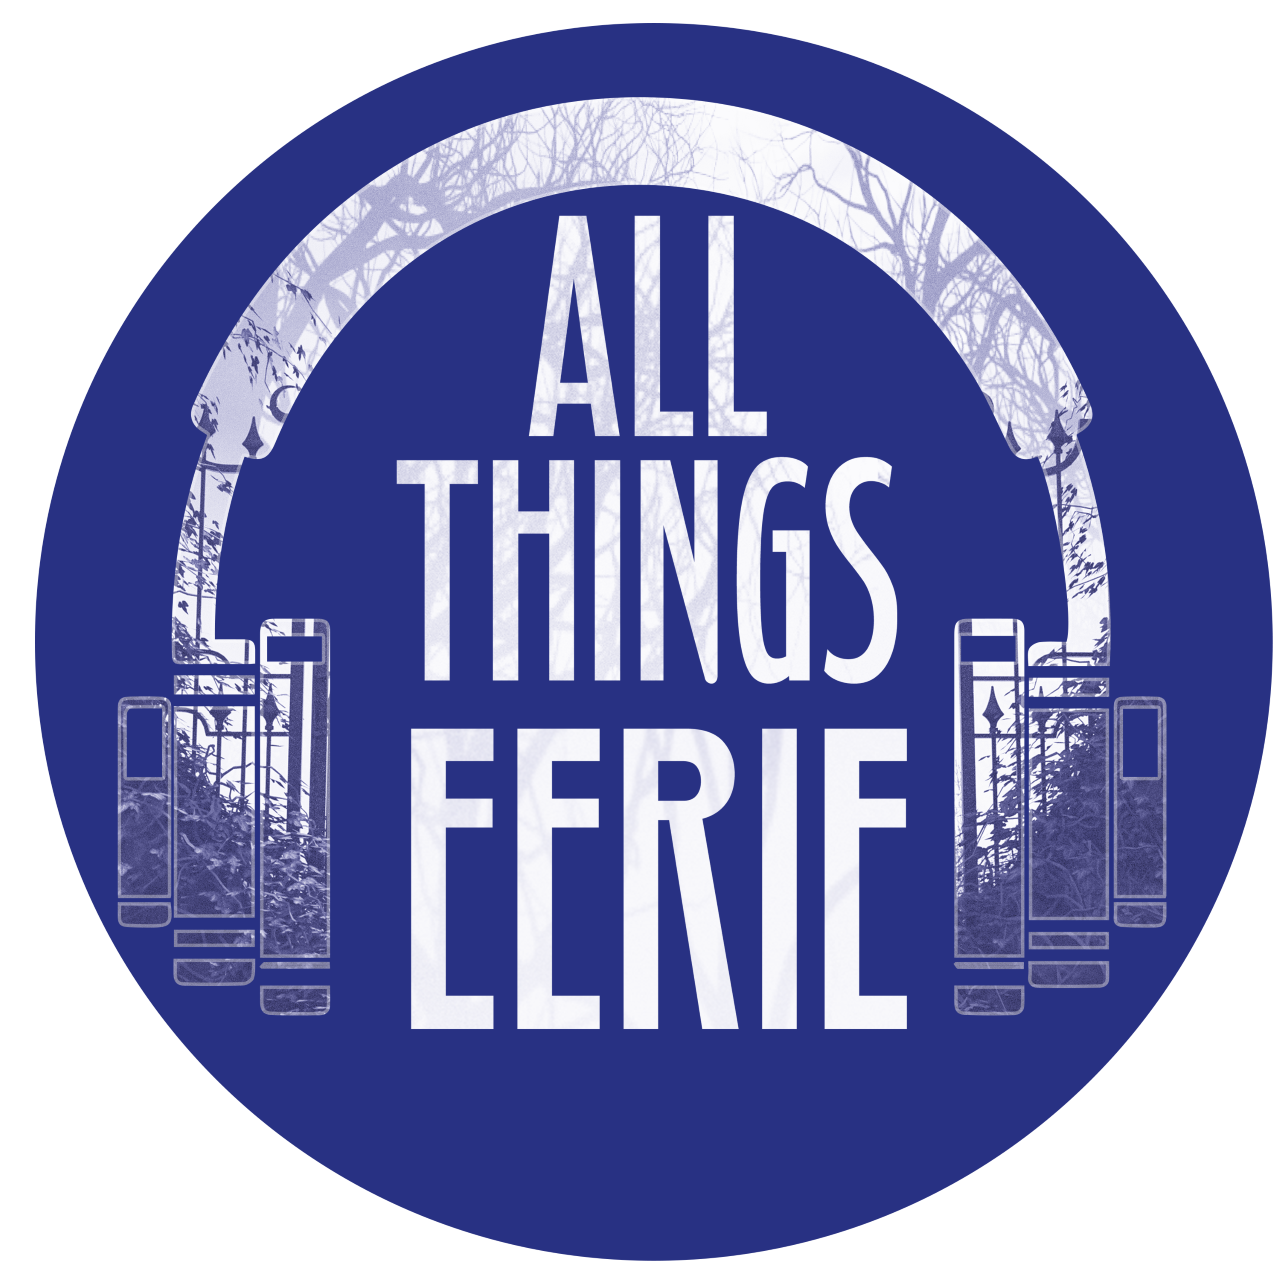 All Things Eerie logo